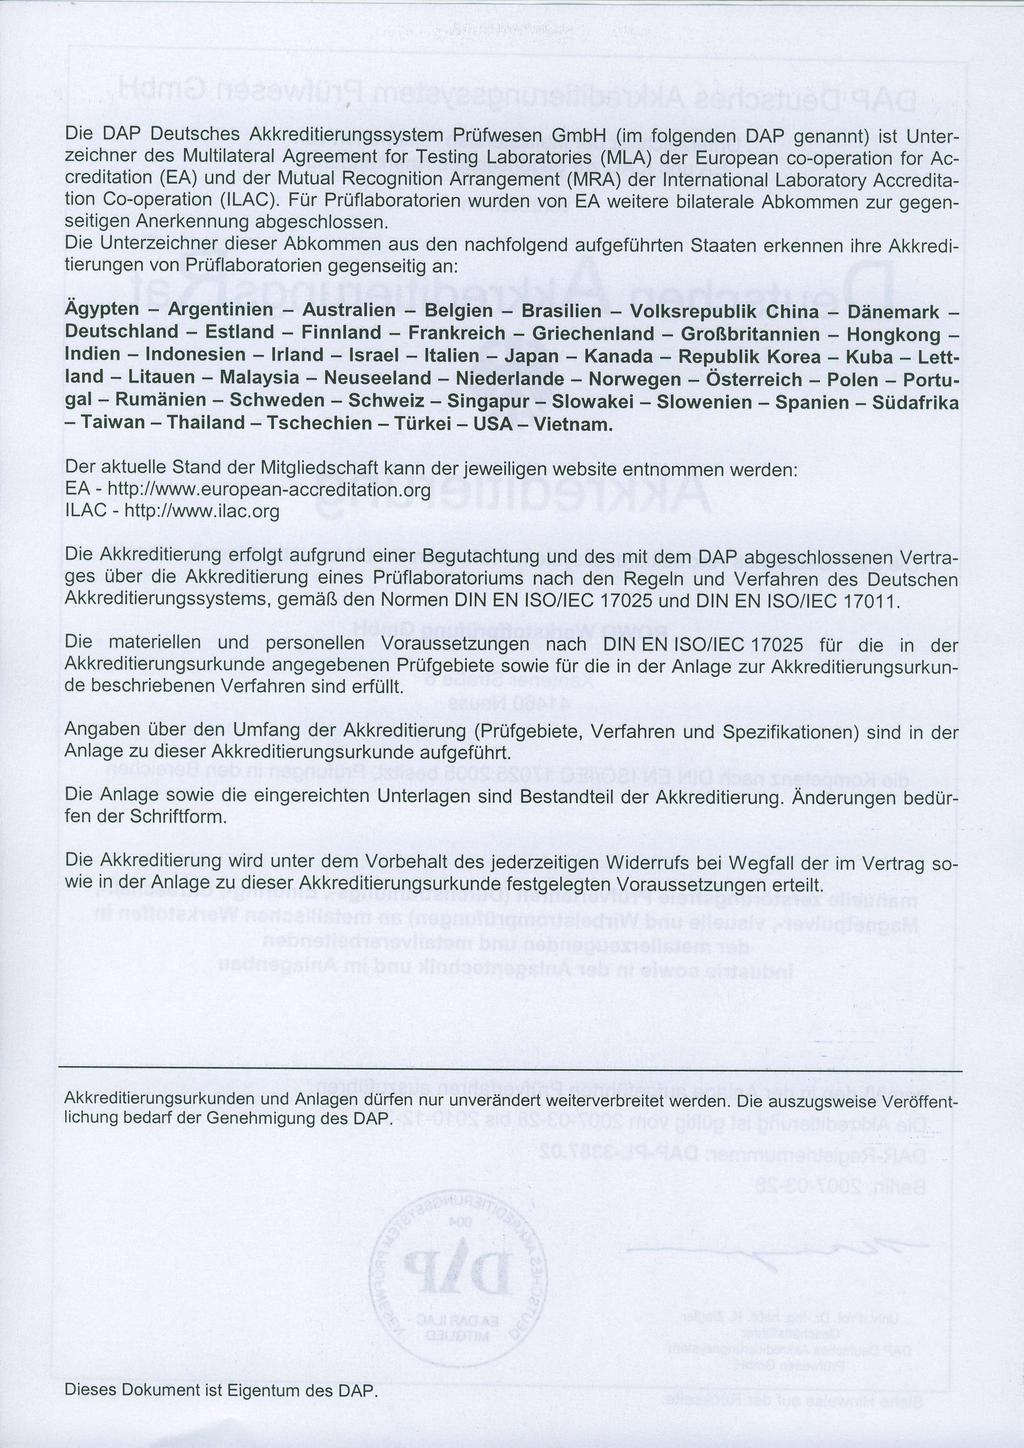 Die DAP Deutsches Akkreditierungssystem Prüfwesen GmbH (im folgenden DAP genannt) ist Unterzeichner des Multilateral Agreement for Testing Laboratories (MLA) der European co-operation for